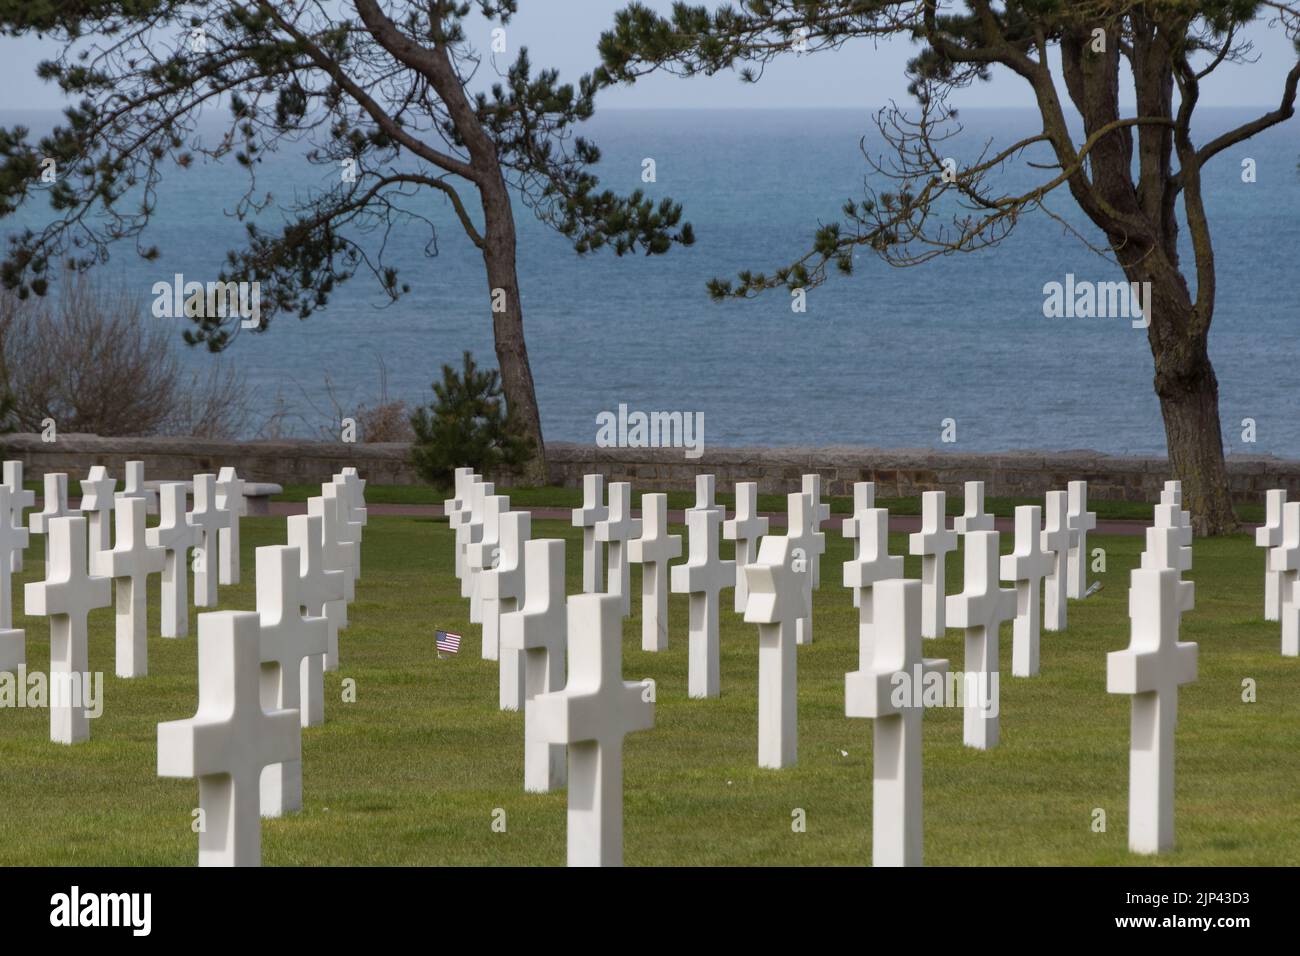 Le cimetière américain de Normandie avec des croix blanches à la mémoire des soldats tombés en France Banque D'Images